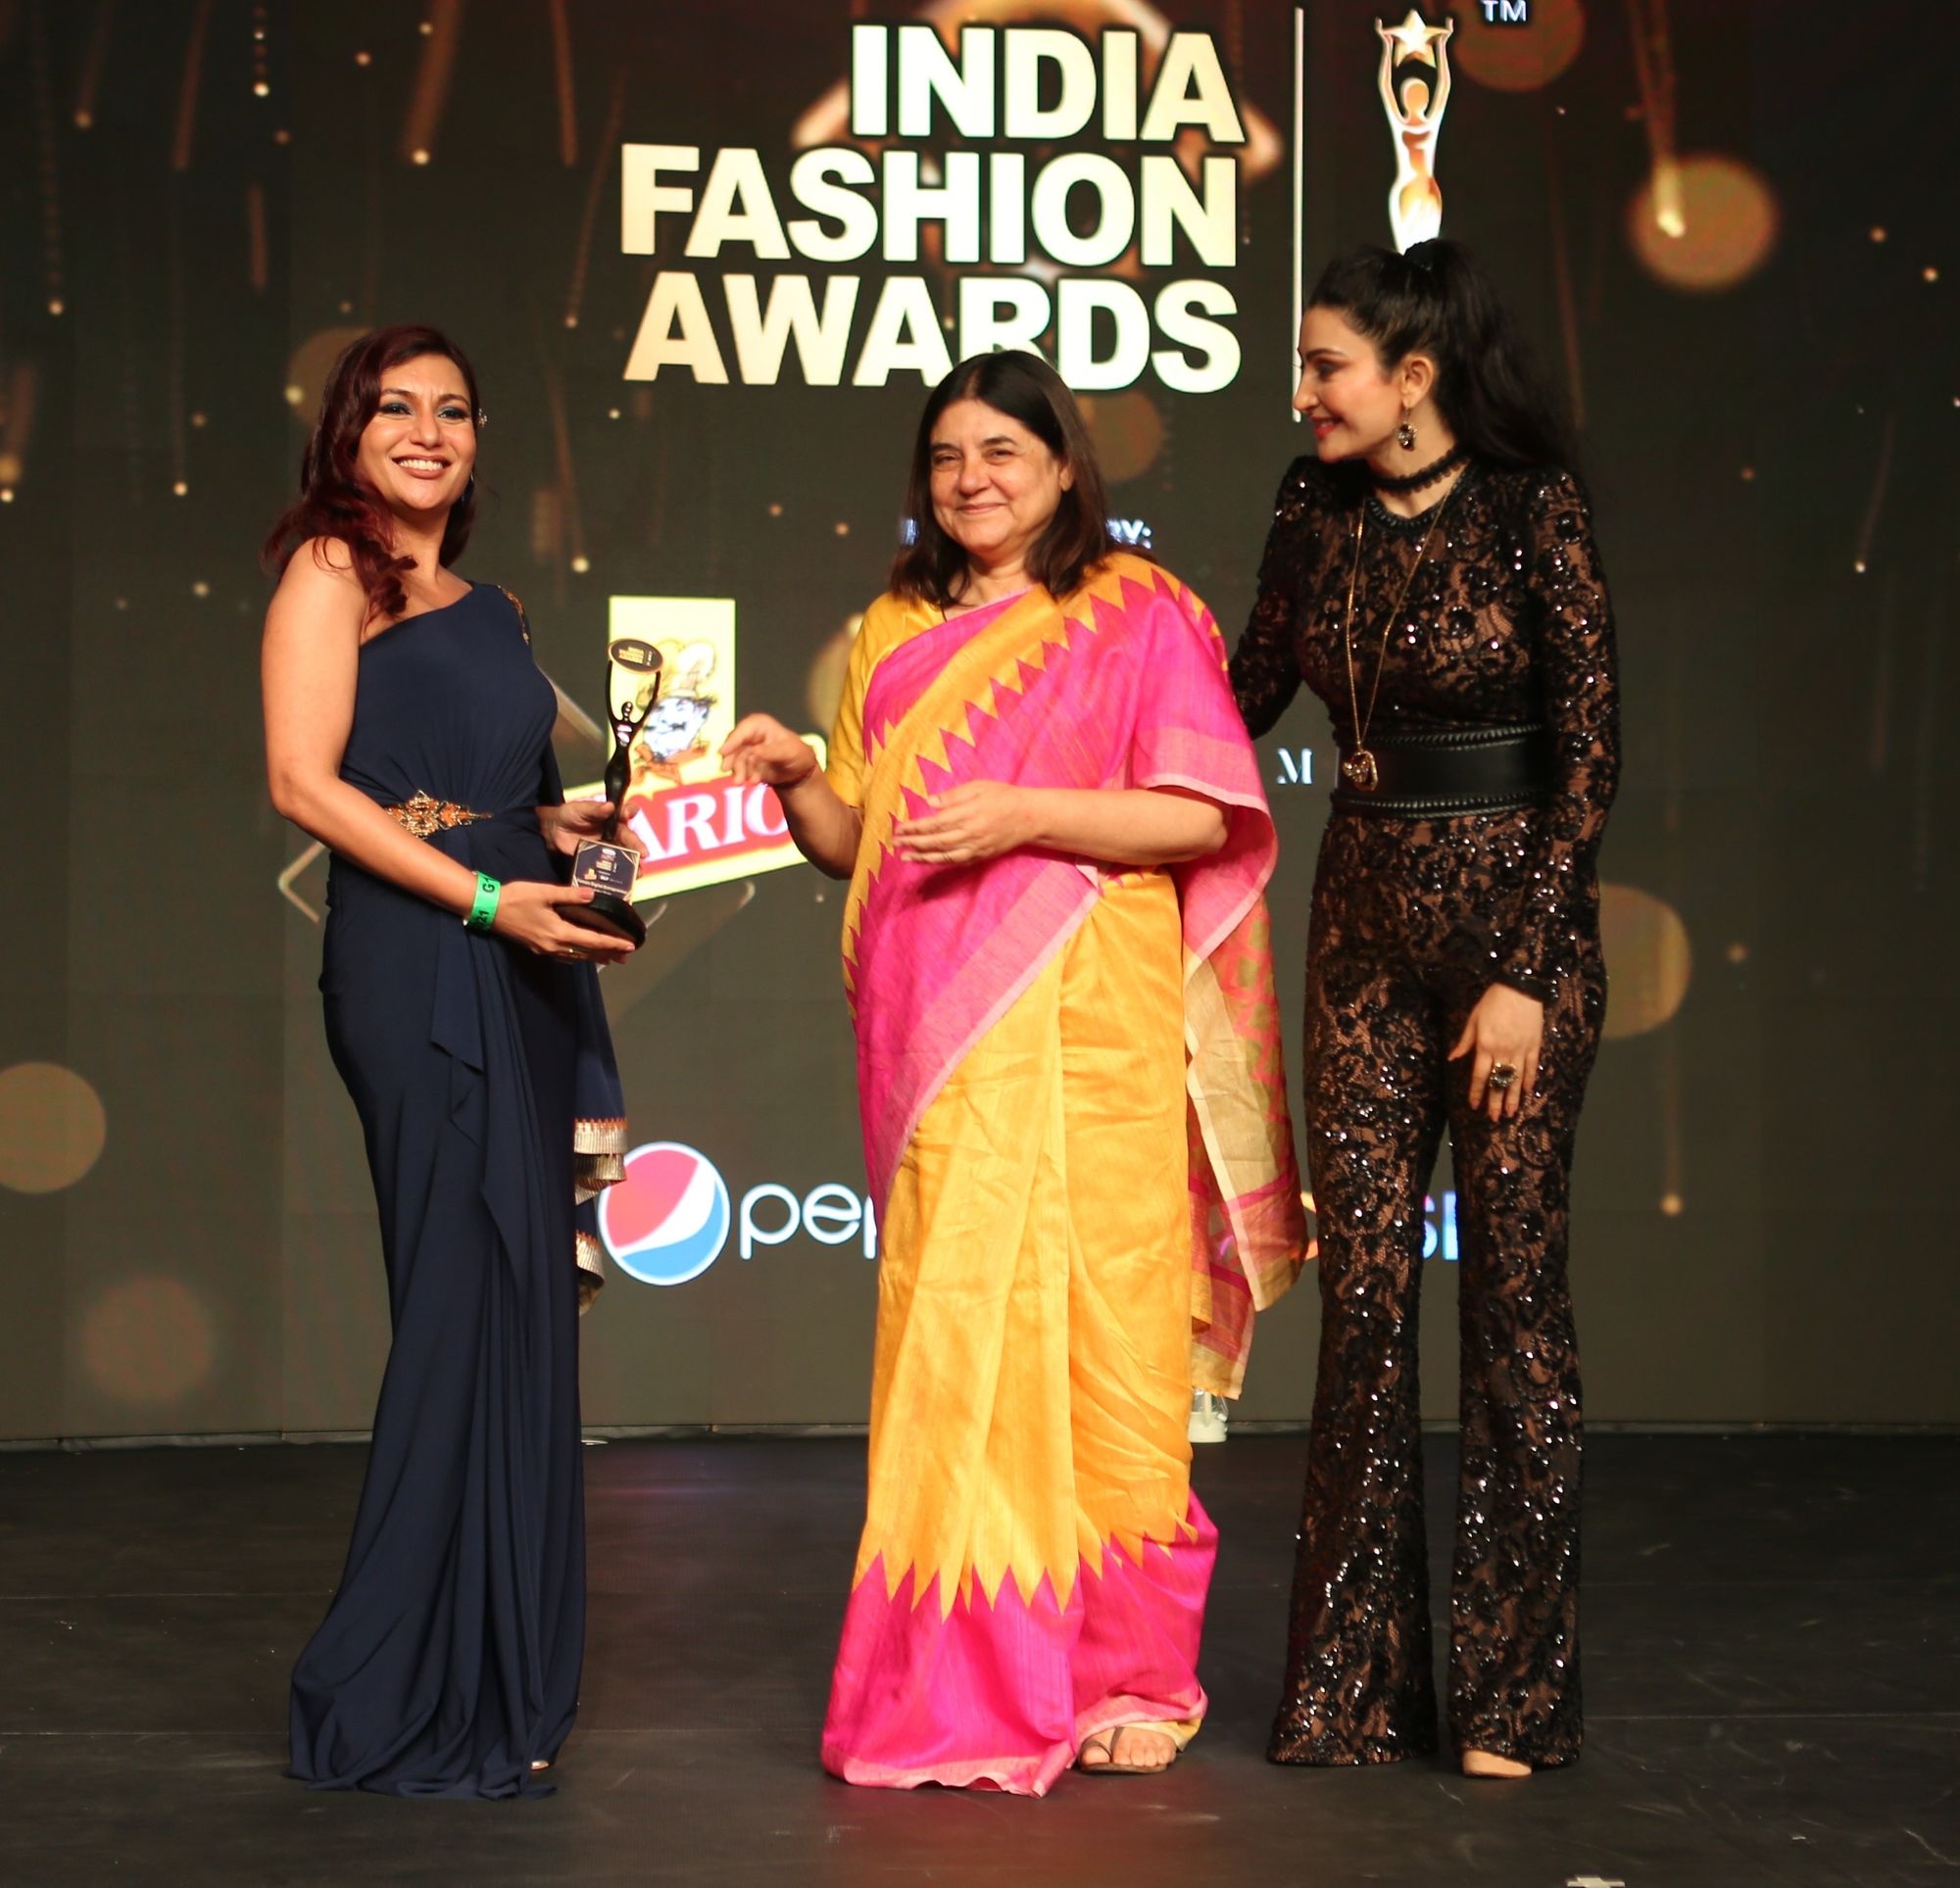 Malini Agarwal Bags Two Wins At India Fashion Awards 2021